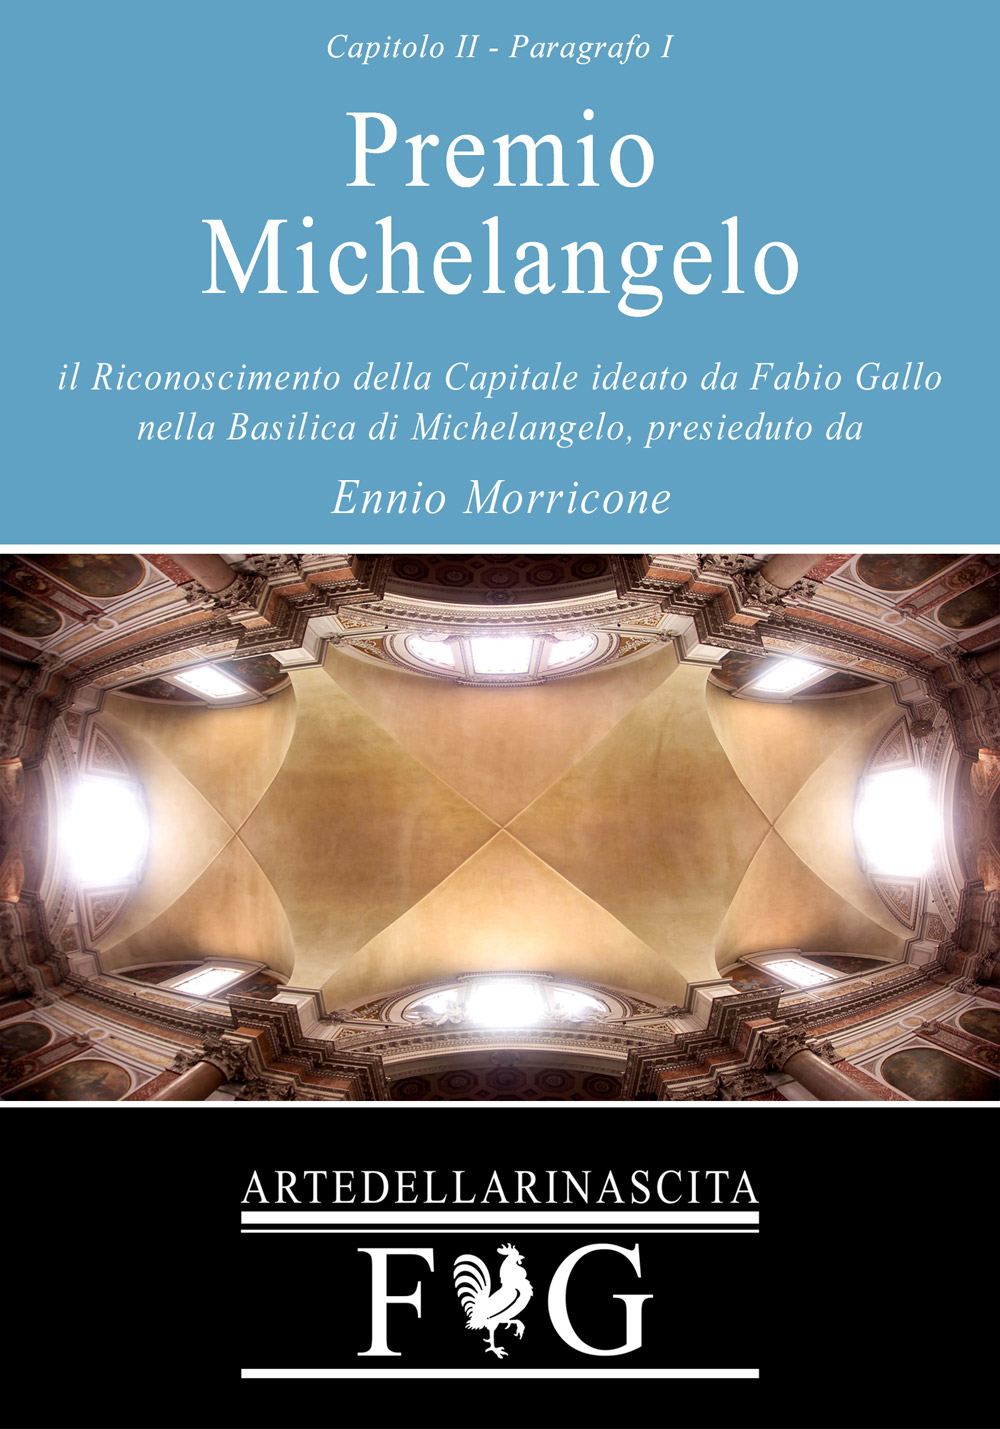 Fabio Gallo - Premio Michelangelo - Basilica Santa Maria degli Angeli e dei Martiri di Roma